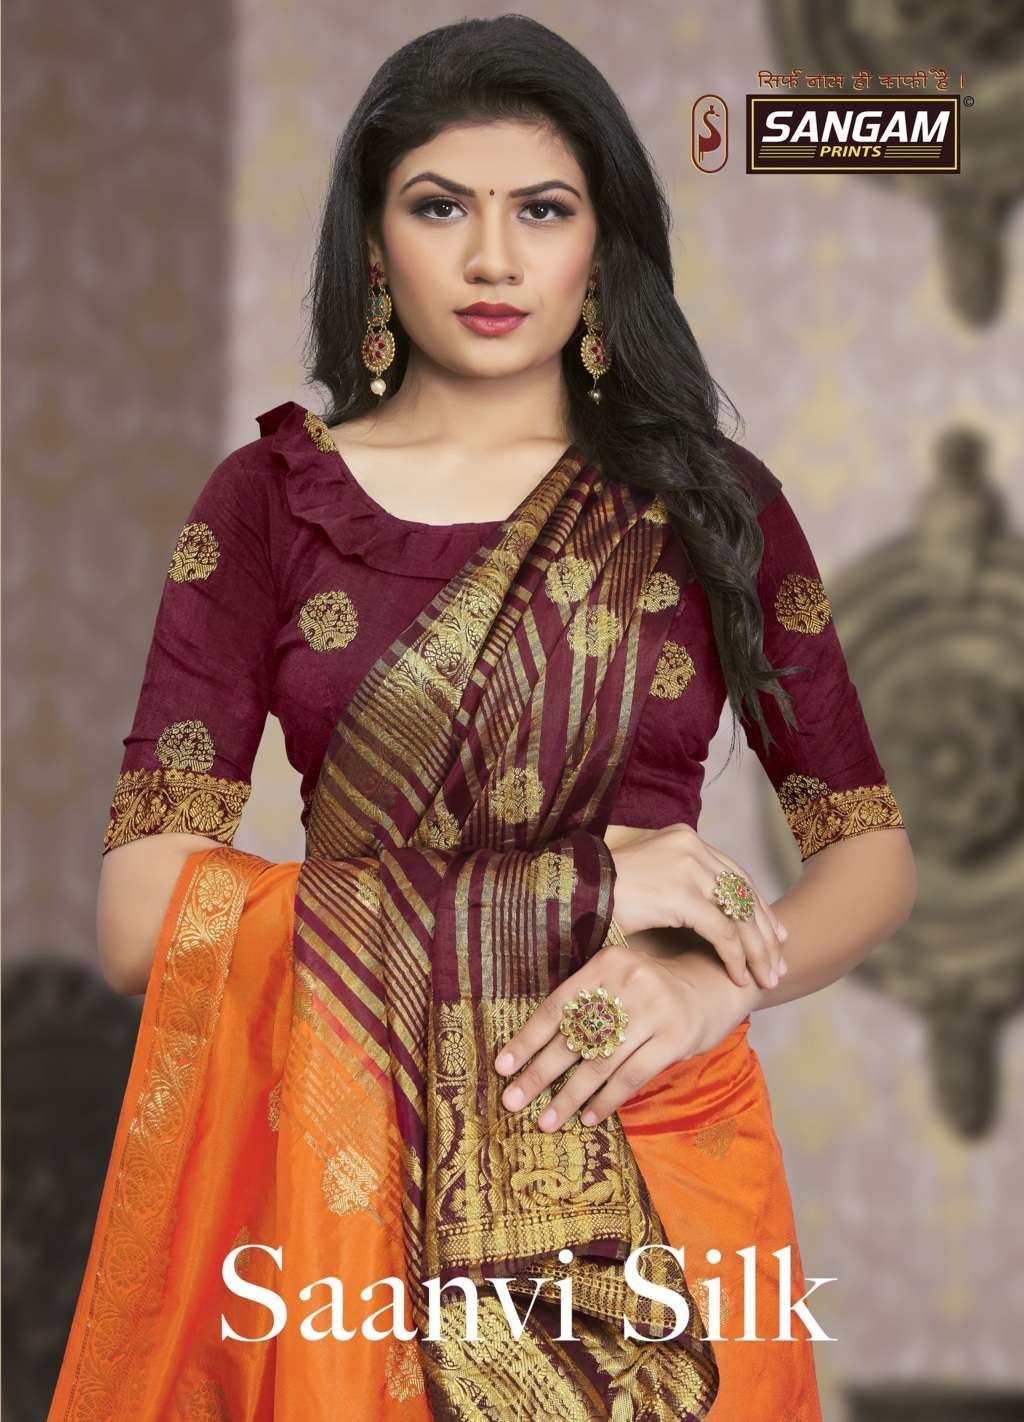 Saanvi Silk By Sangam Designer Silk Sari Supplier